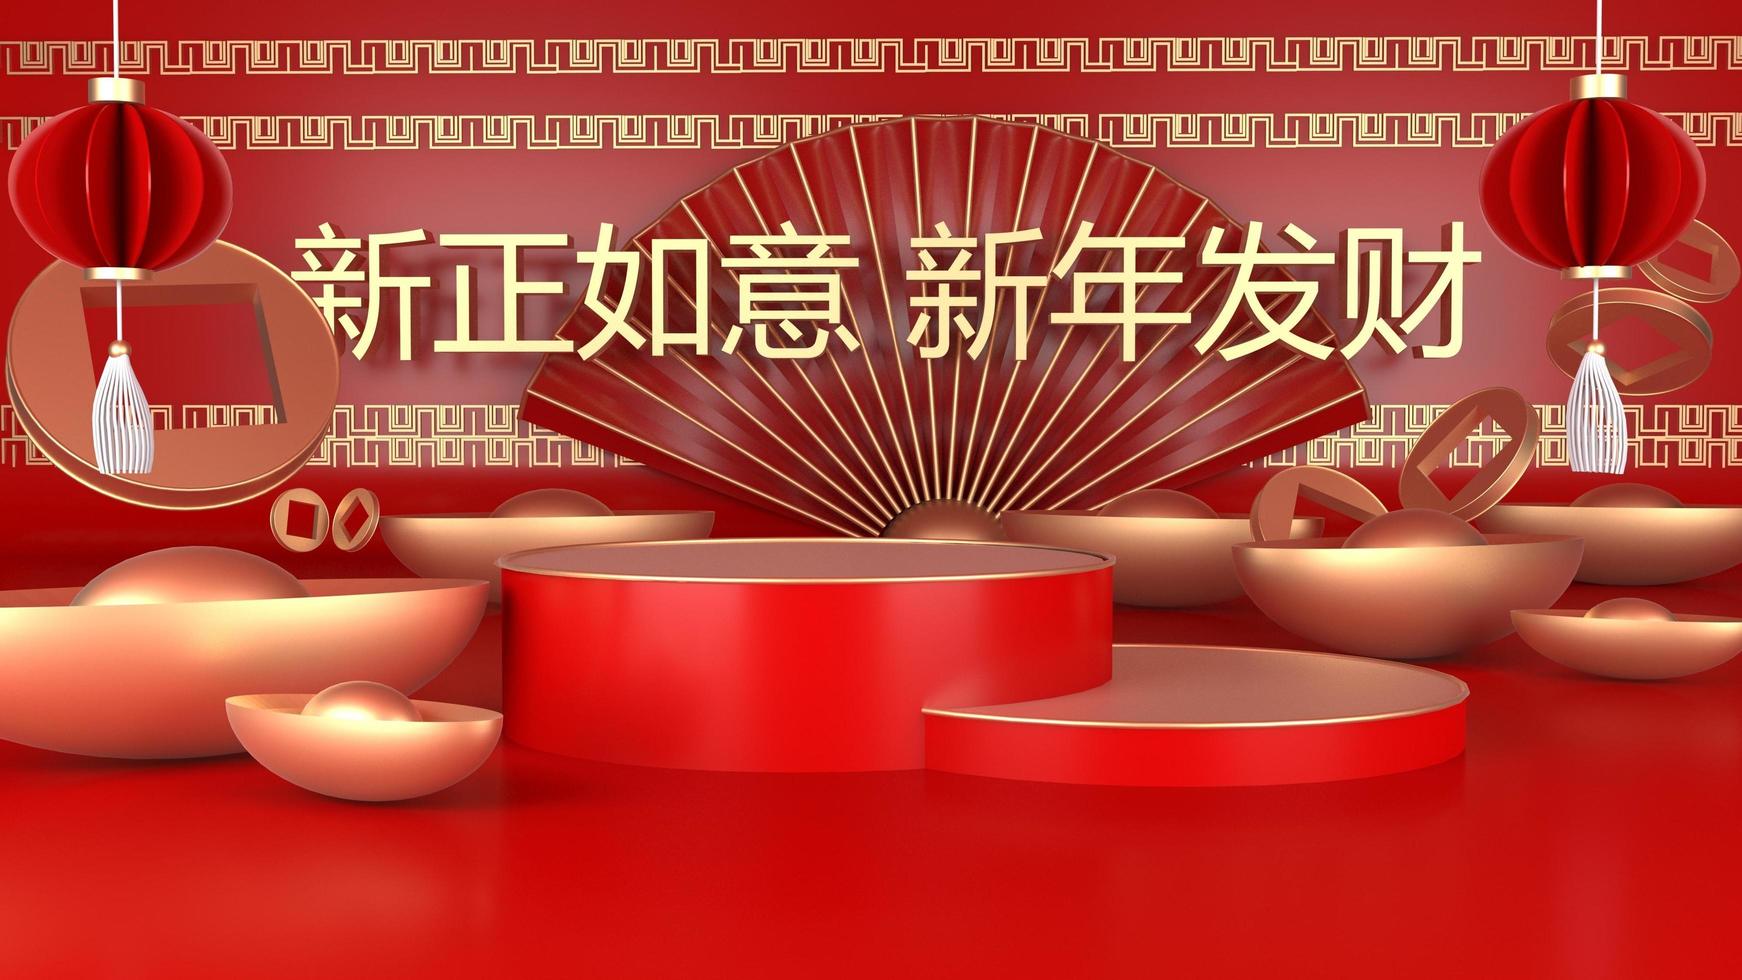 rendu 3d podium rouge pour le joyeux nouvel an chinois 2022.translate sur fond vous souhaite tout le meilleur.riche bonne chance toute l'année. photo